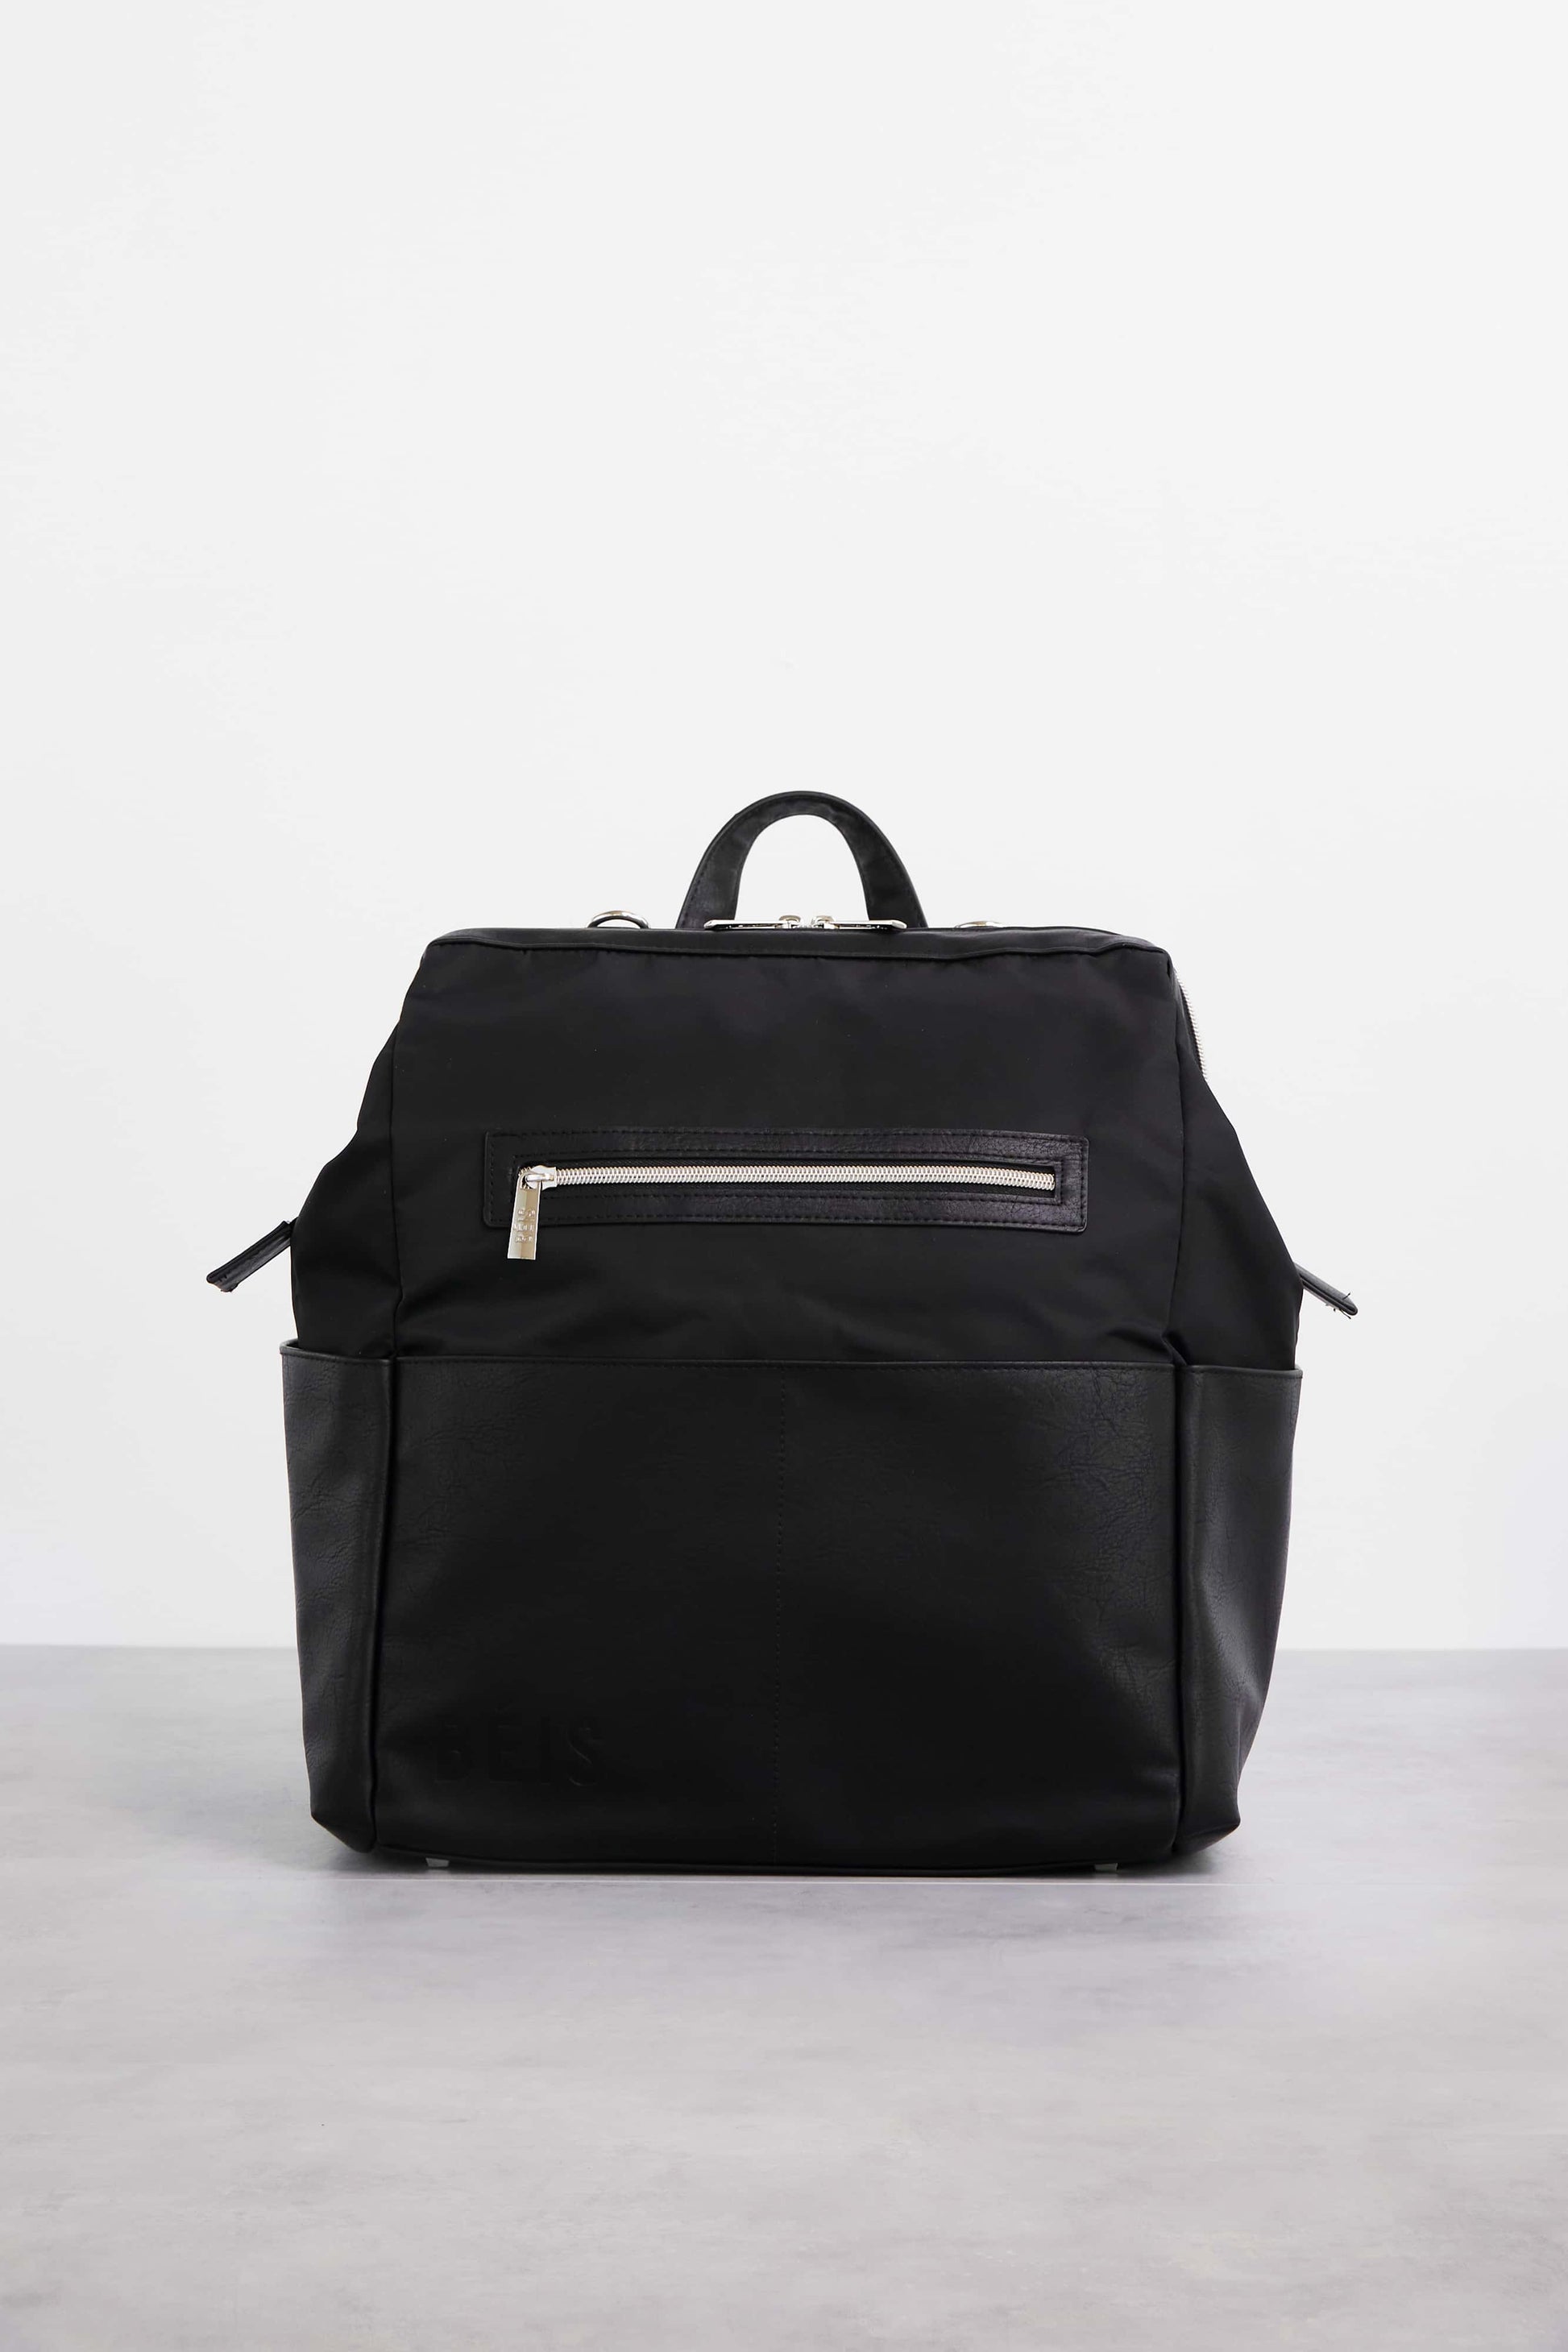 Backpack Diaper Bag Black Front